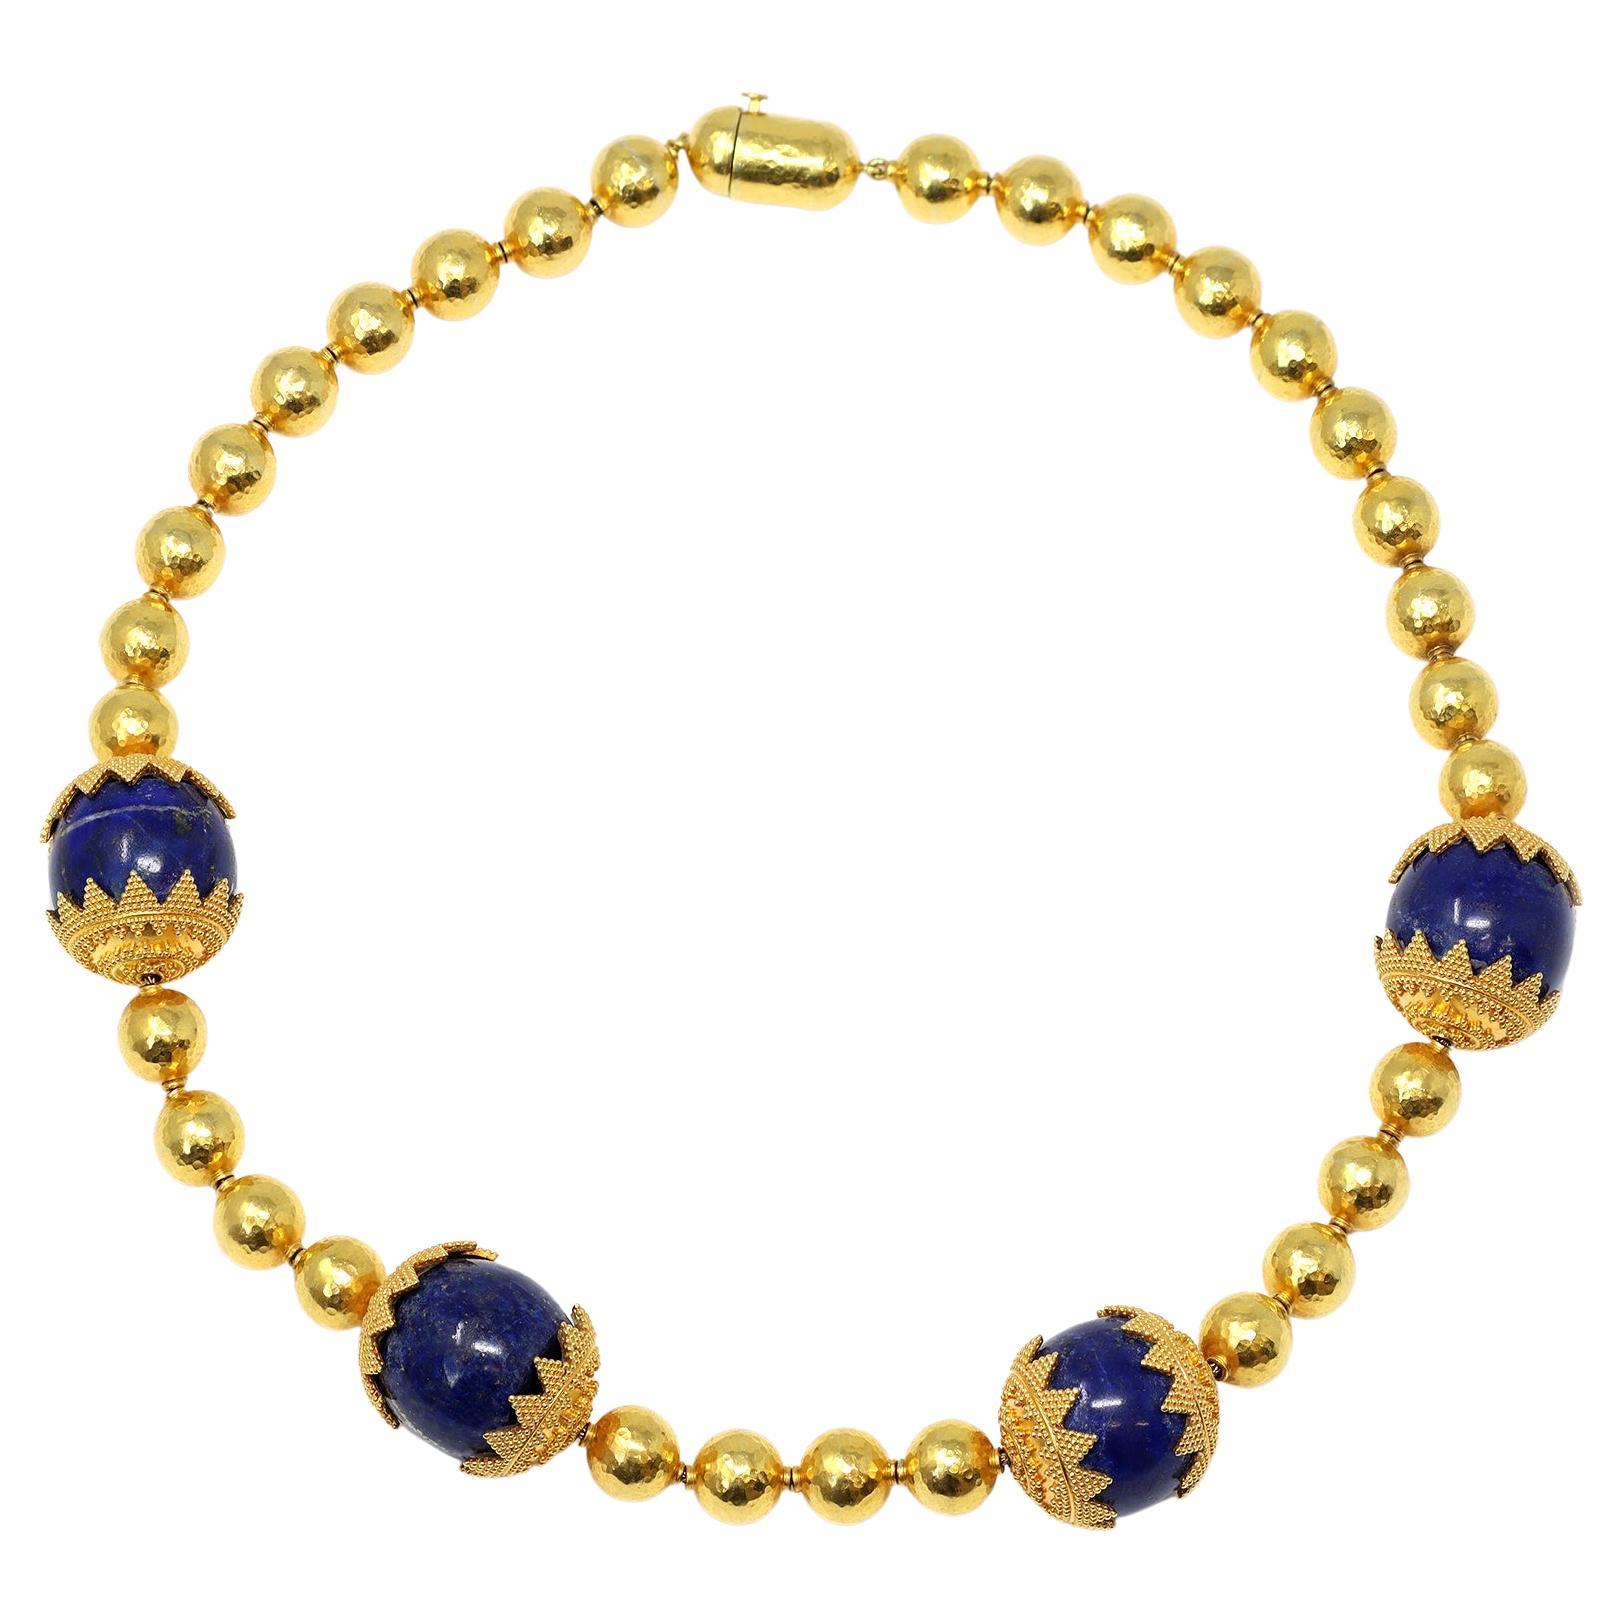 Halskette aus hochkarätigem Gold mit Lapislazuli-Perlen CA 1970